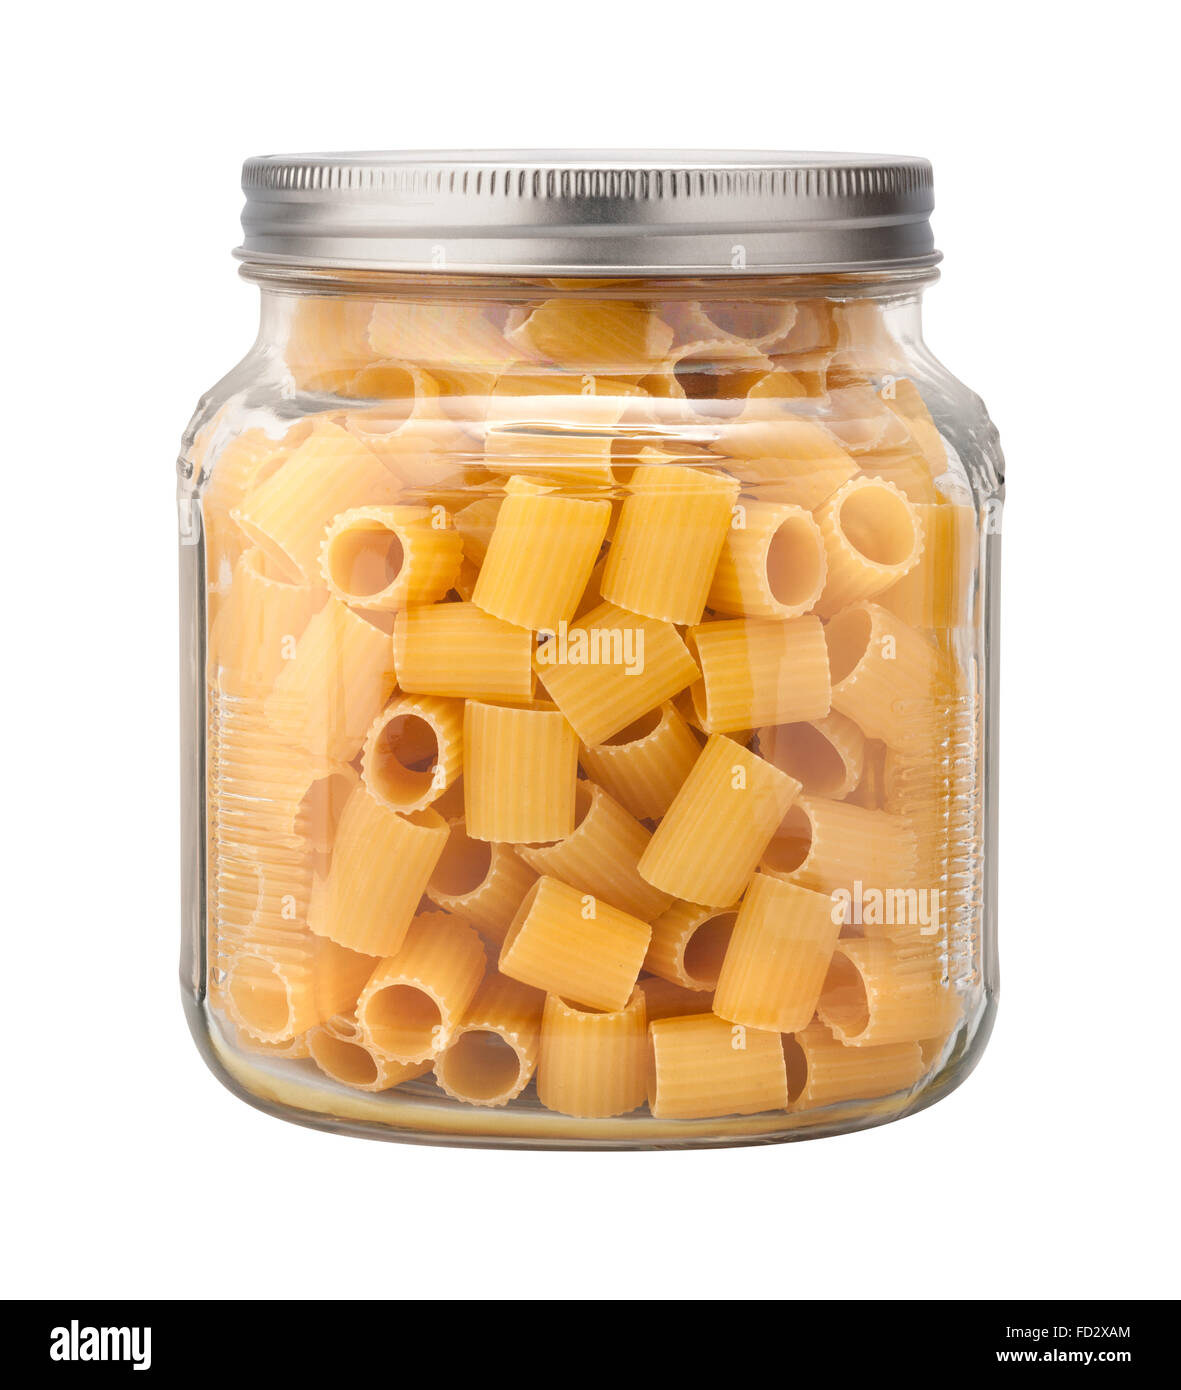 Mezzi Rigatoni Pasta in un vasetto di vetro. L'immagine è tagliata, isolato su uno sfondo bianco. Foto Stock